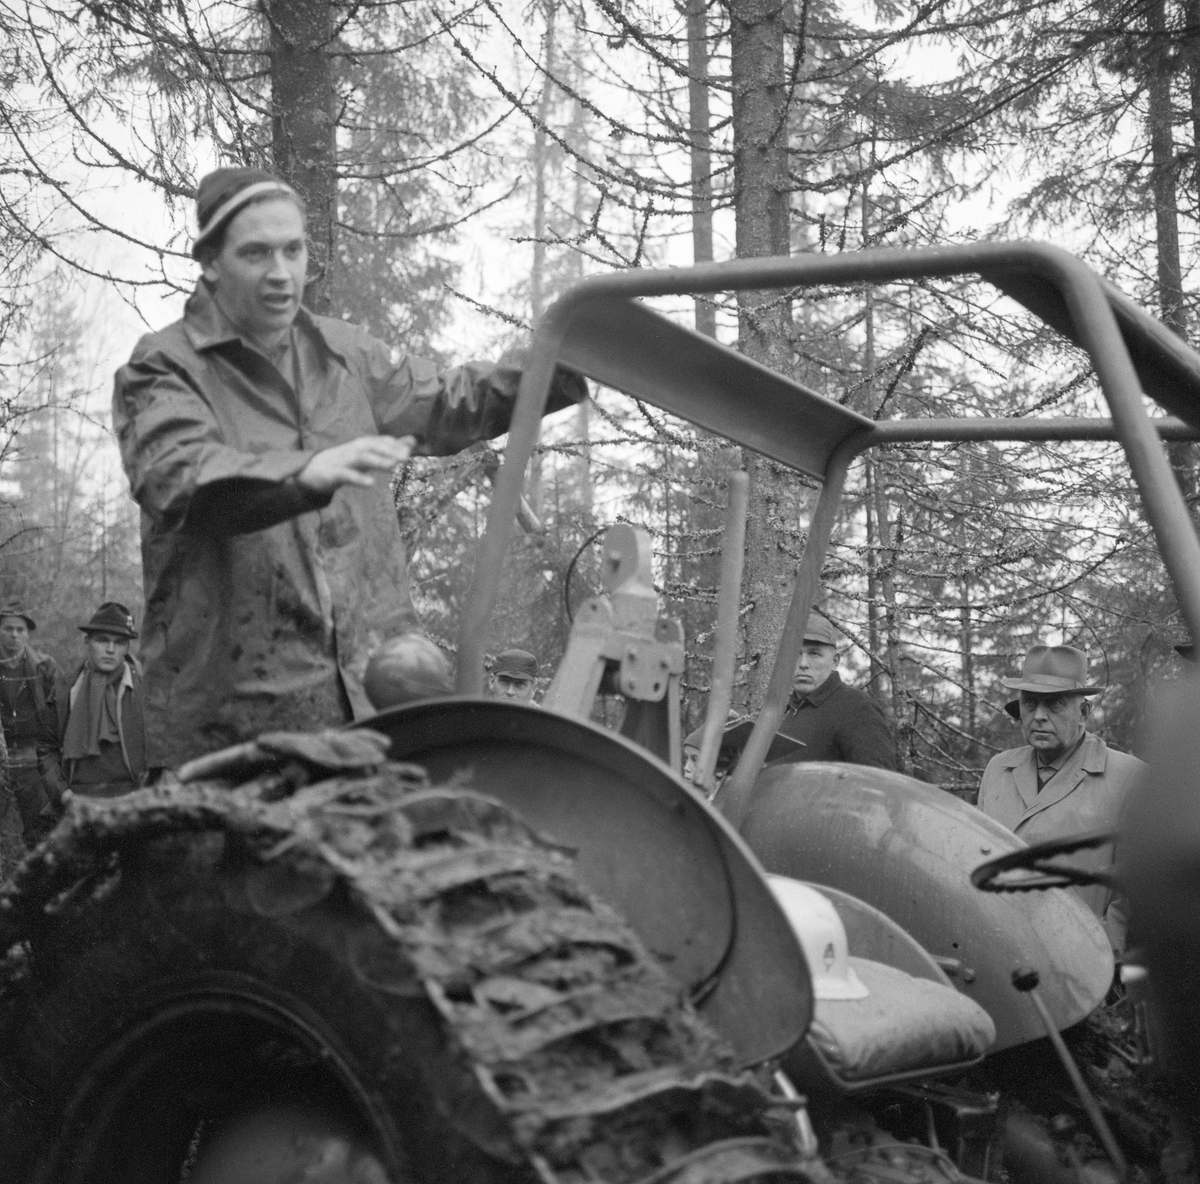 Fra en en driftsteknisk orientert skogdag i Strandbygda i Elverum (Hedmark) høsten 1963. Fotografiet viser en av instruktørene, en mann med regnjakke og topplue, som sto på trepunktkoplinga, eller kanskje på en lastebanke, bak førerplassen og gestikulerte mens han snakket til ei gruppe alvorlige, lyttende menn. Traktoren var utstyrt med halvbelter, som skulle øke bæreevnen, og den hadde veltebøyle. Hovedpersonen på dette bildet likner på Carl Fredrik Lindeman, som kom til Glommen skogeierforenings avdeling i Elverum som driftsteknisk konsulent i 1961. Ti år seinere fikk han tittelen skogbrukssjef.  Mannen vi ser deler av ansiktet til bak verltebøyla på traktoren er skogeier Rolf Sætersmoen fra Elverum.